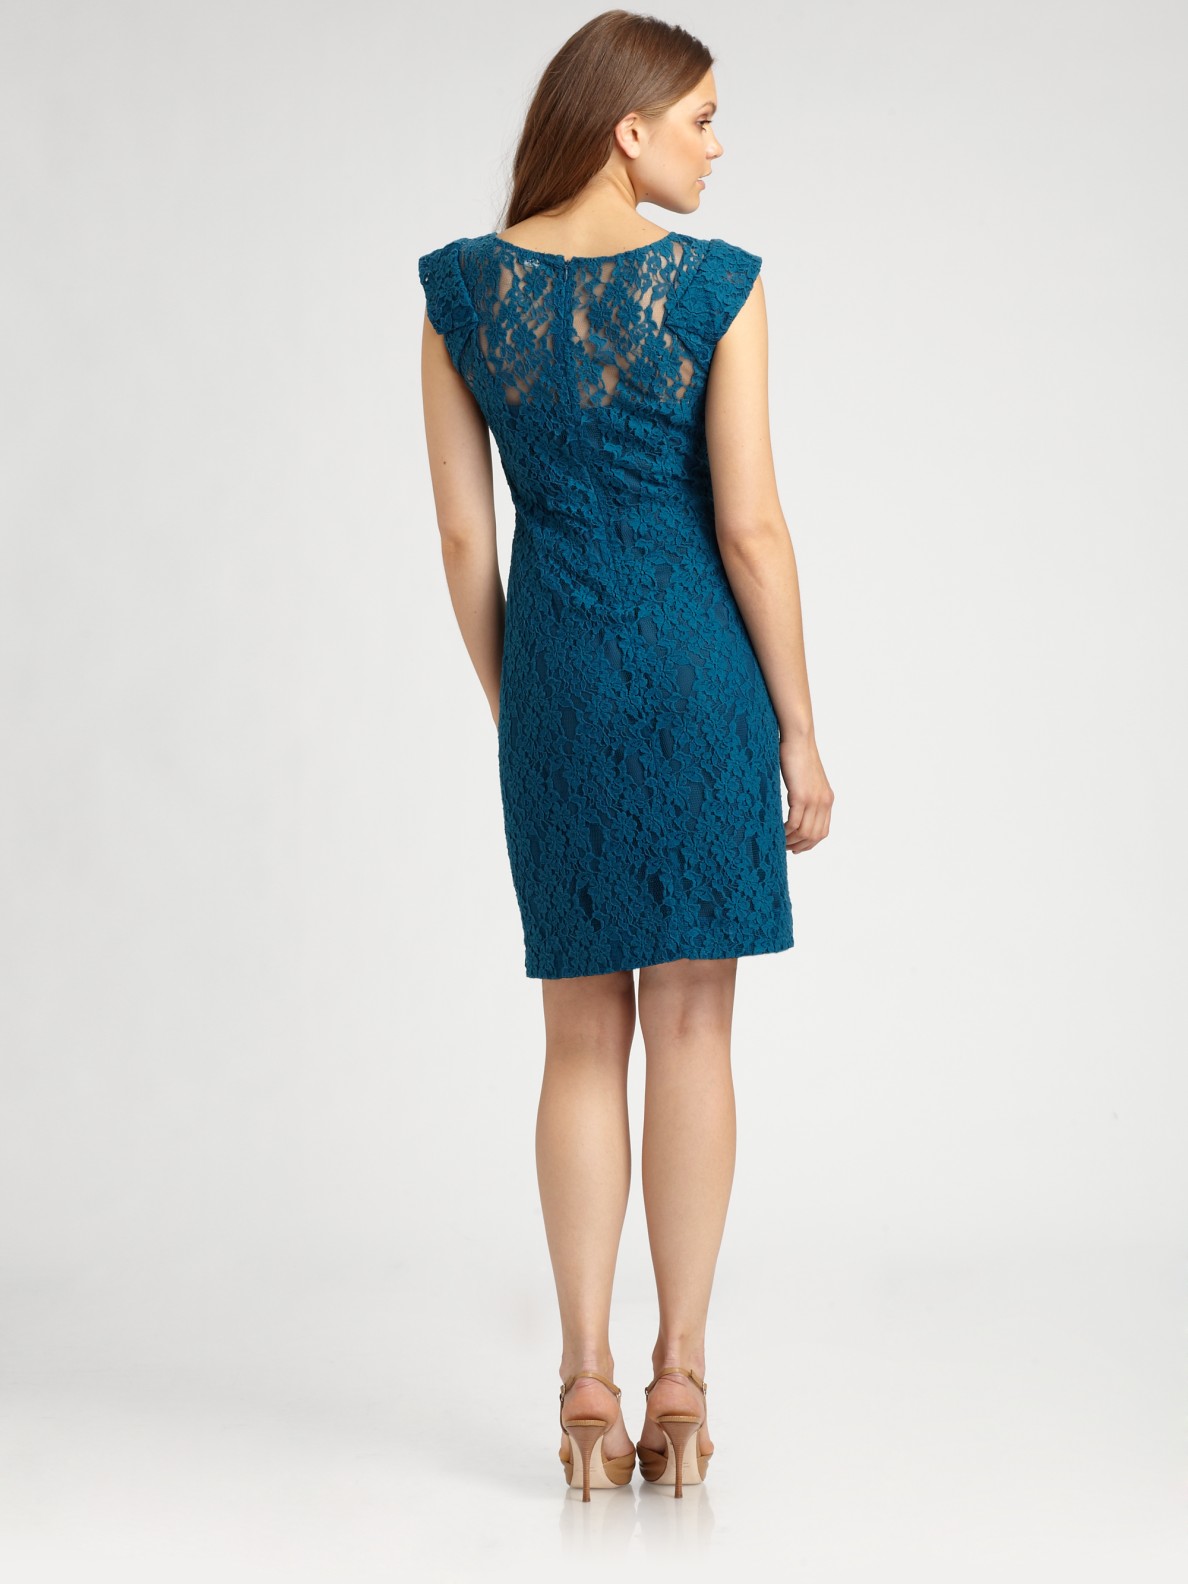 Lyst - Dkny Lace Dress in Blue